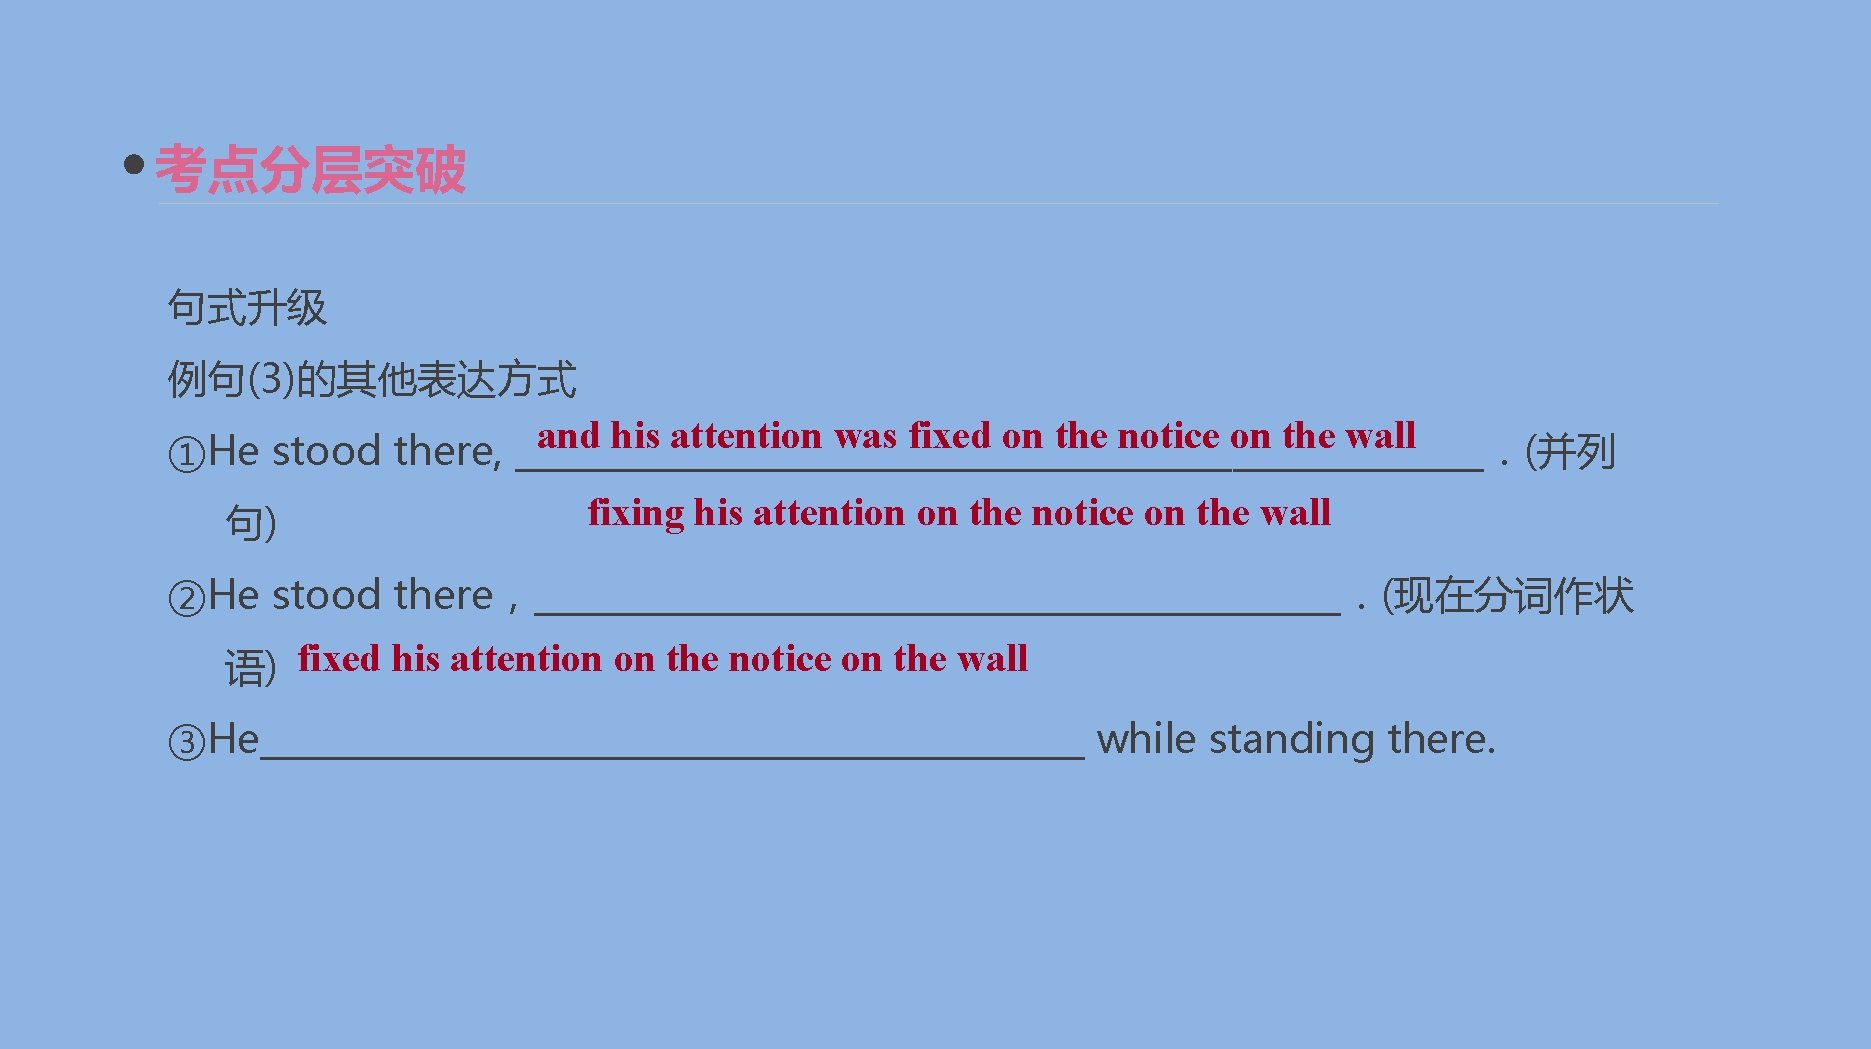 考点分层突破 句式升级 例句(3)的其他表达方式 and his attention was fixed on the notice on the wall